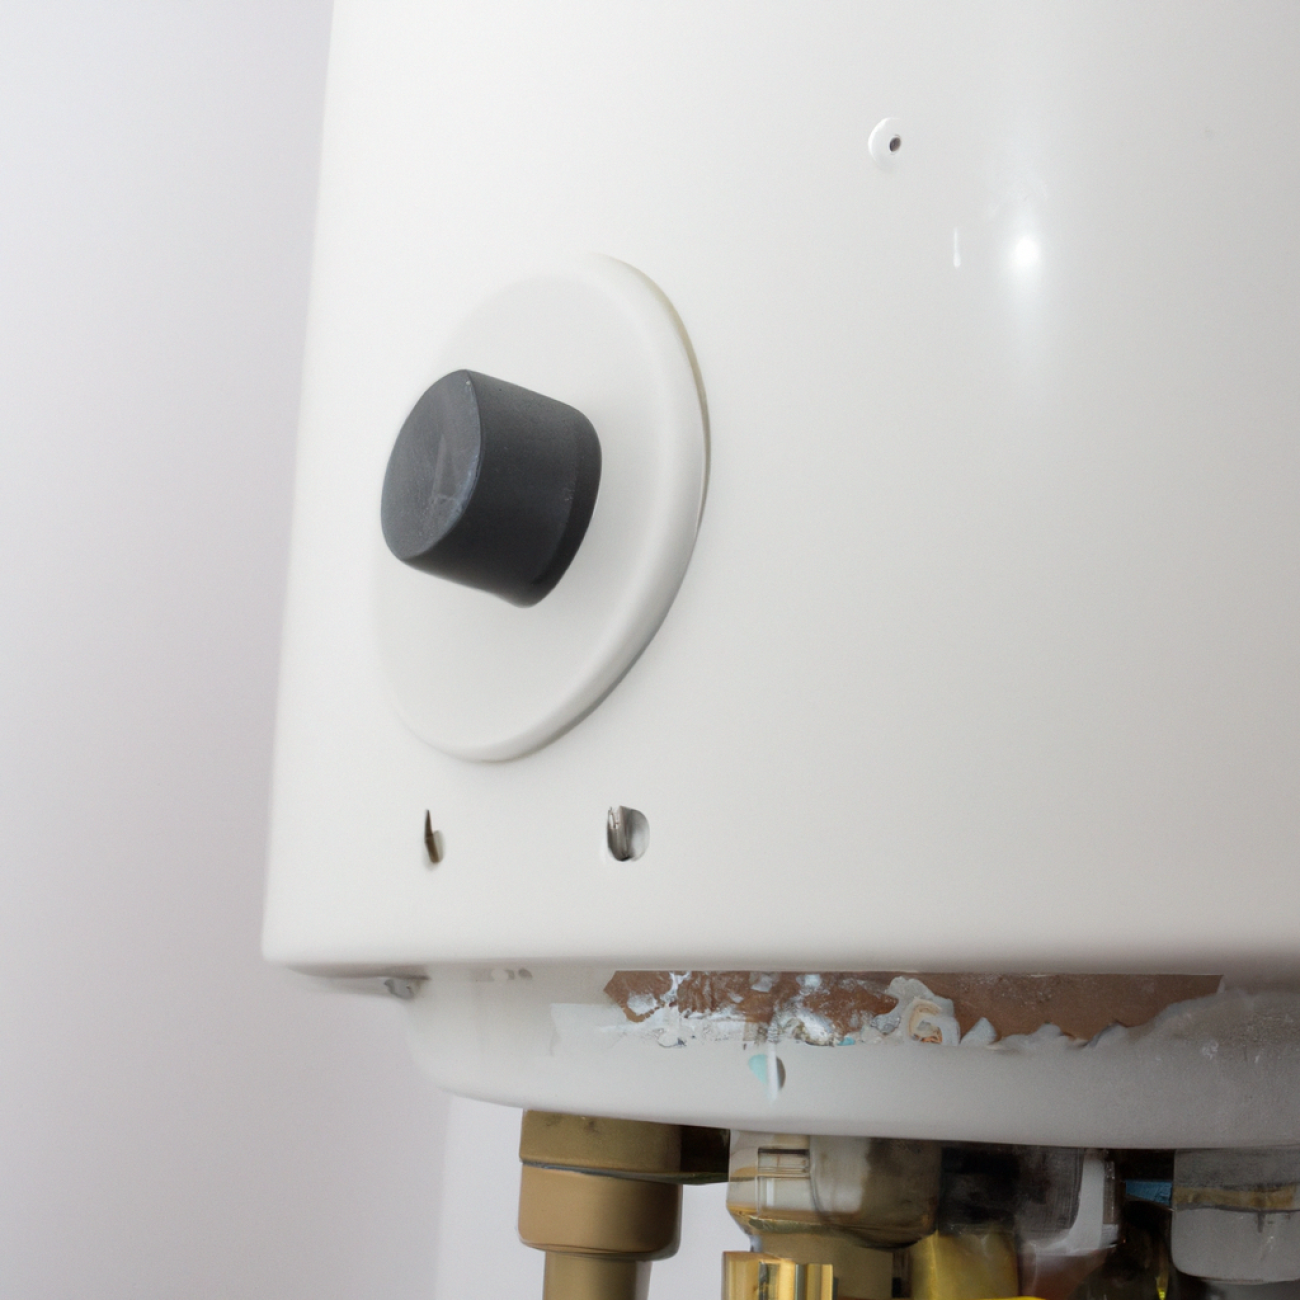 Mohou problémy s vlhkostí ovlivnit plynový kotel umístěný v koupelně?